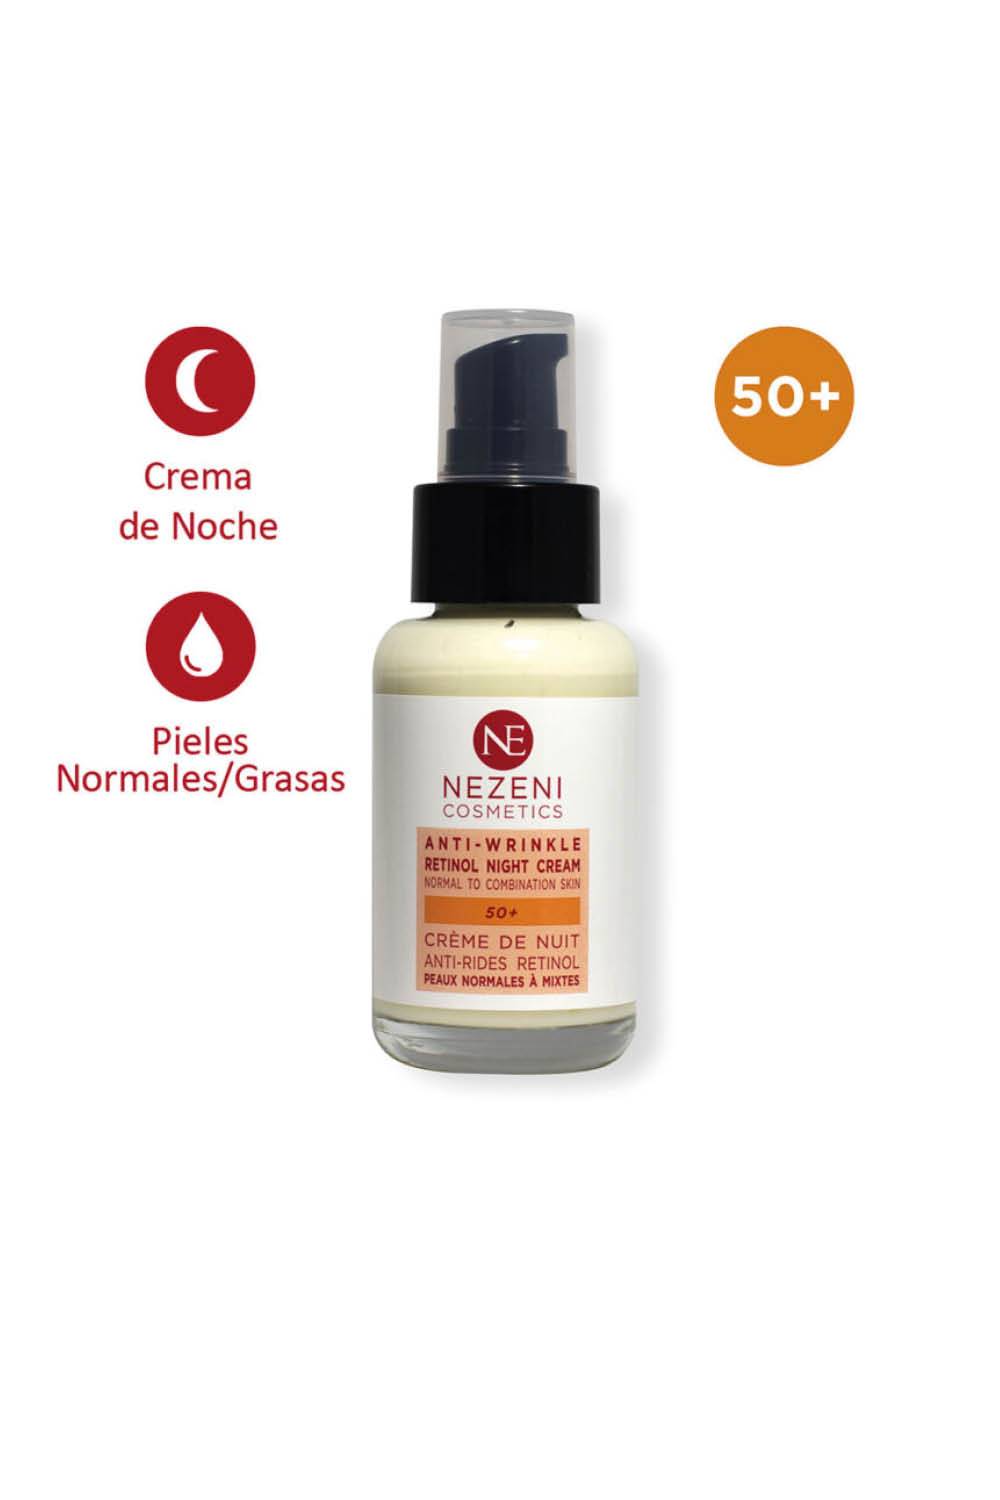 Cremas con retinol: Crema Antiarrugas Noche de Nezeni